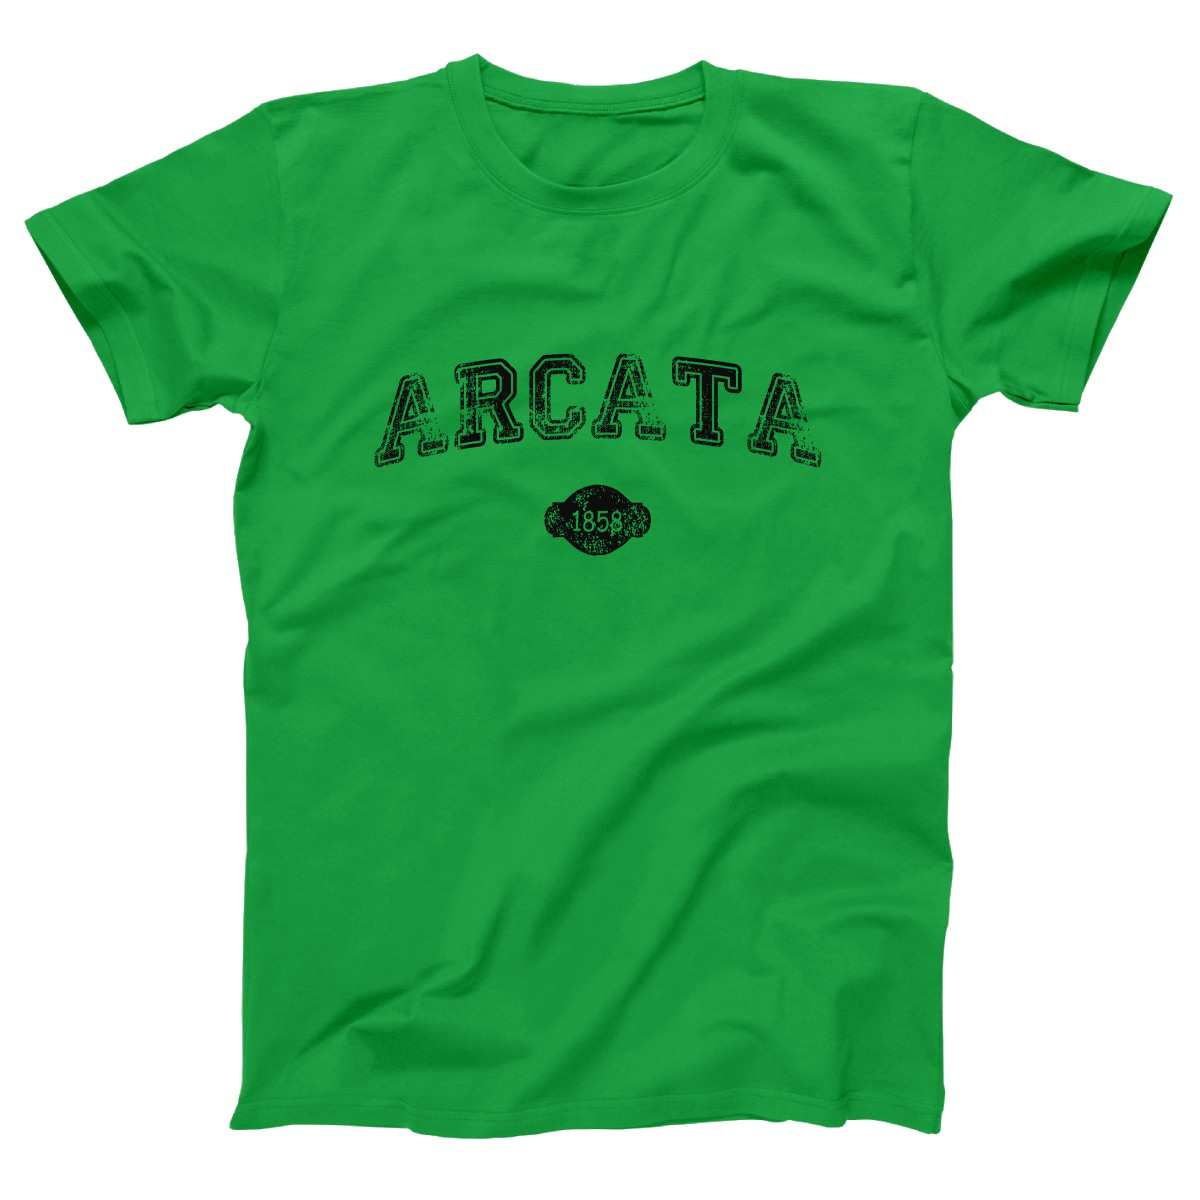 Arcata 1858 Represent Women's T-shirt | Green